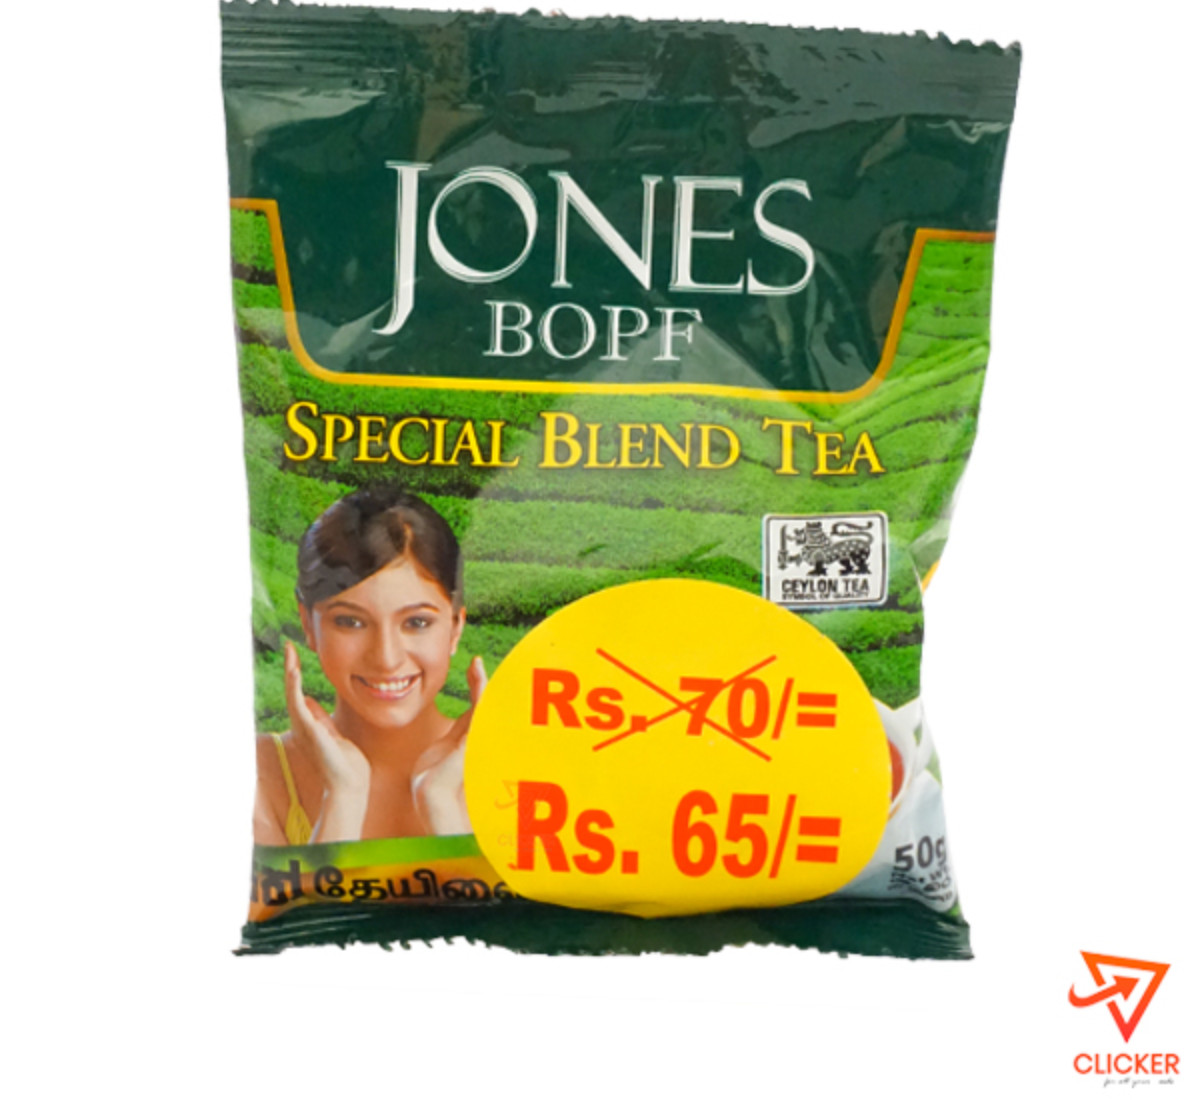 Clicker product 50g JONES BOPF Special Blend Tea 992